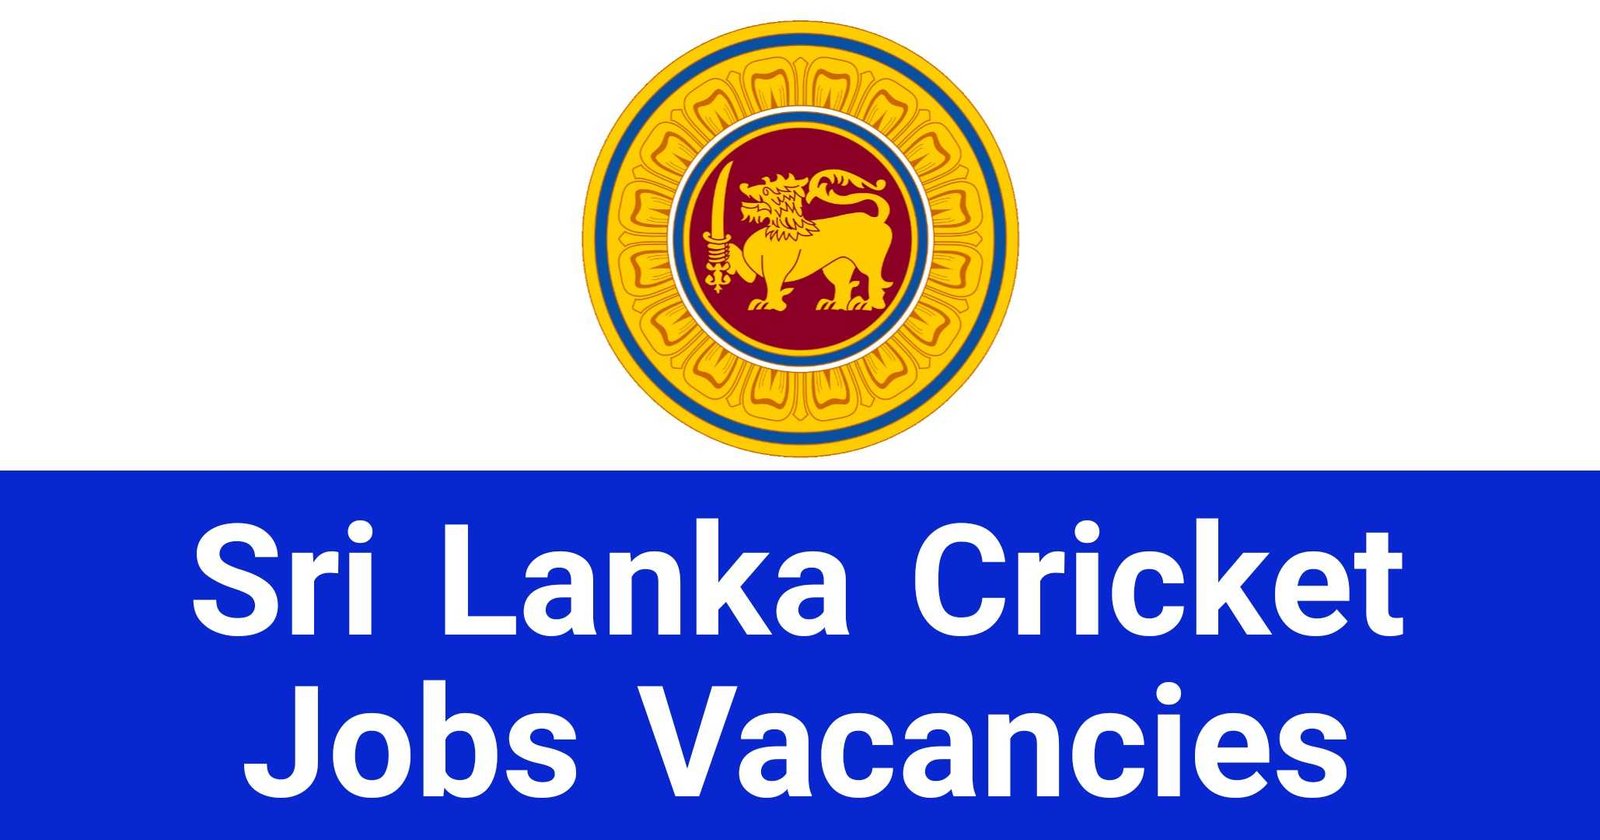 Sri Lanka Cricket Jobs Vacancies Recruitments Applications